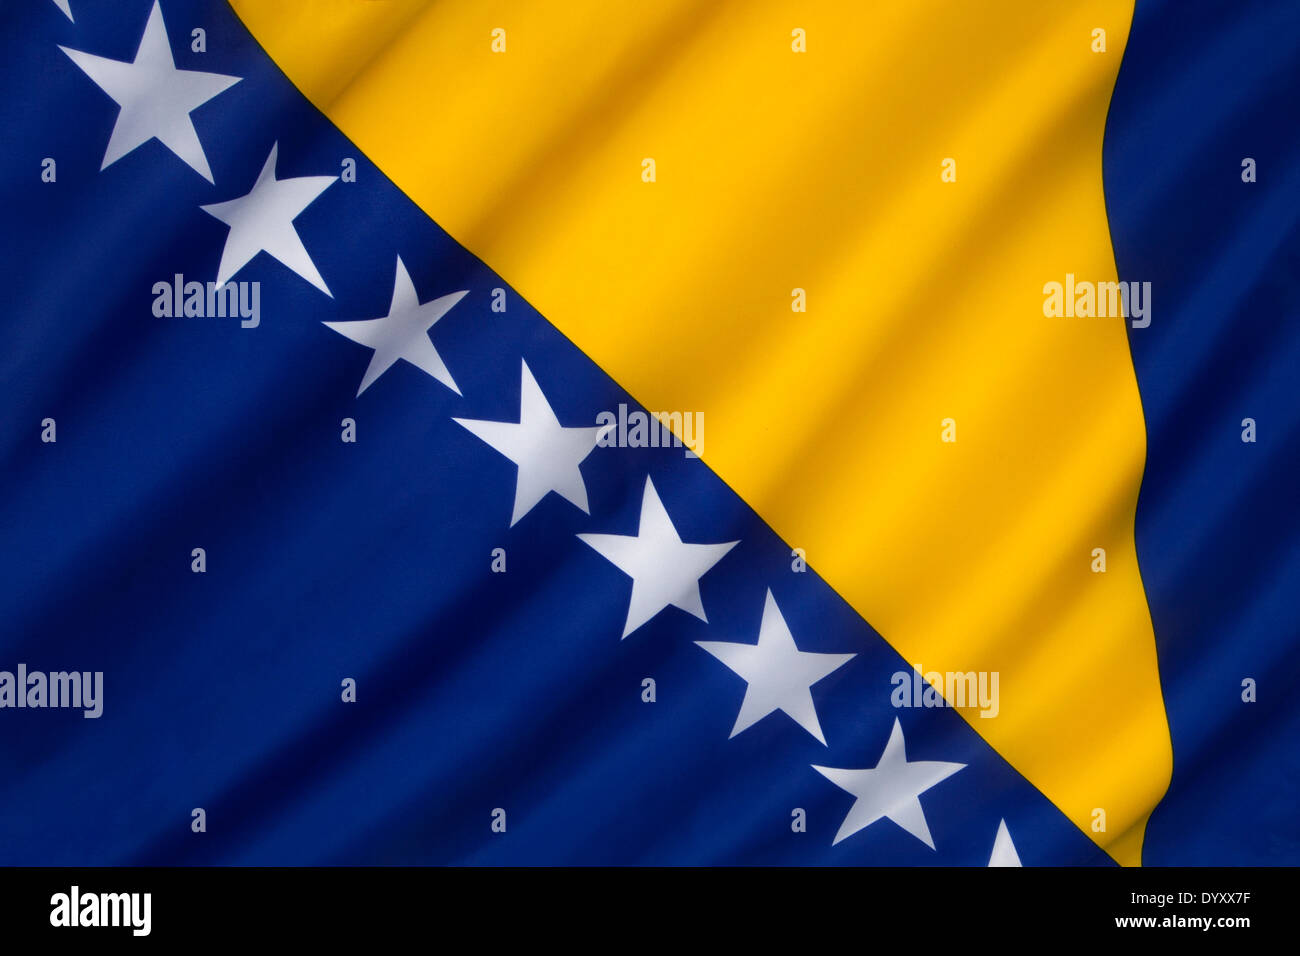 Flag of Bosnia and Herzegovina Stock Photo